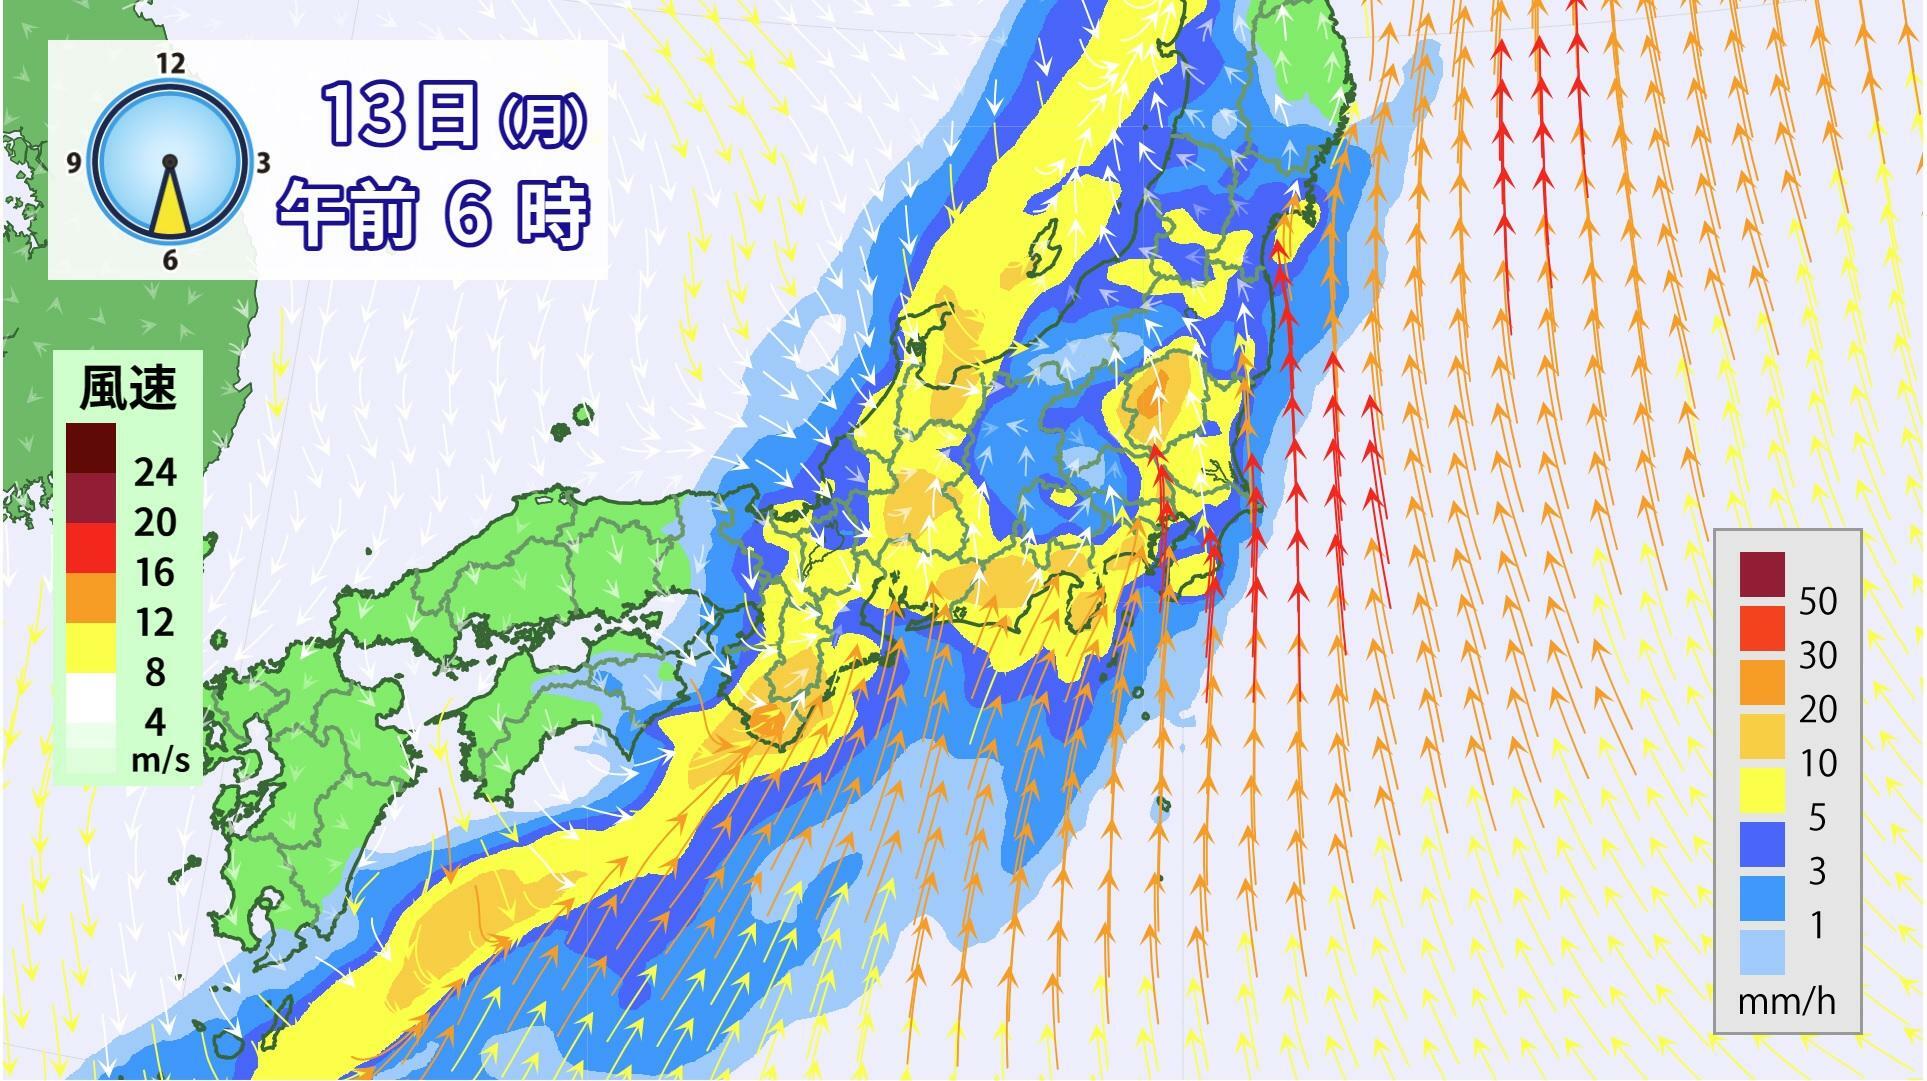 図1　雨と風の分布予想（5月13日6時の予想）